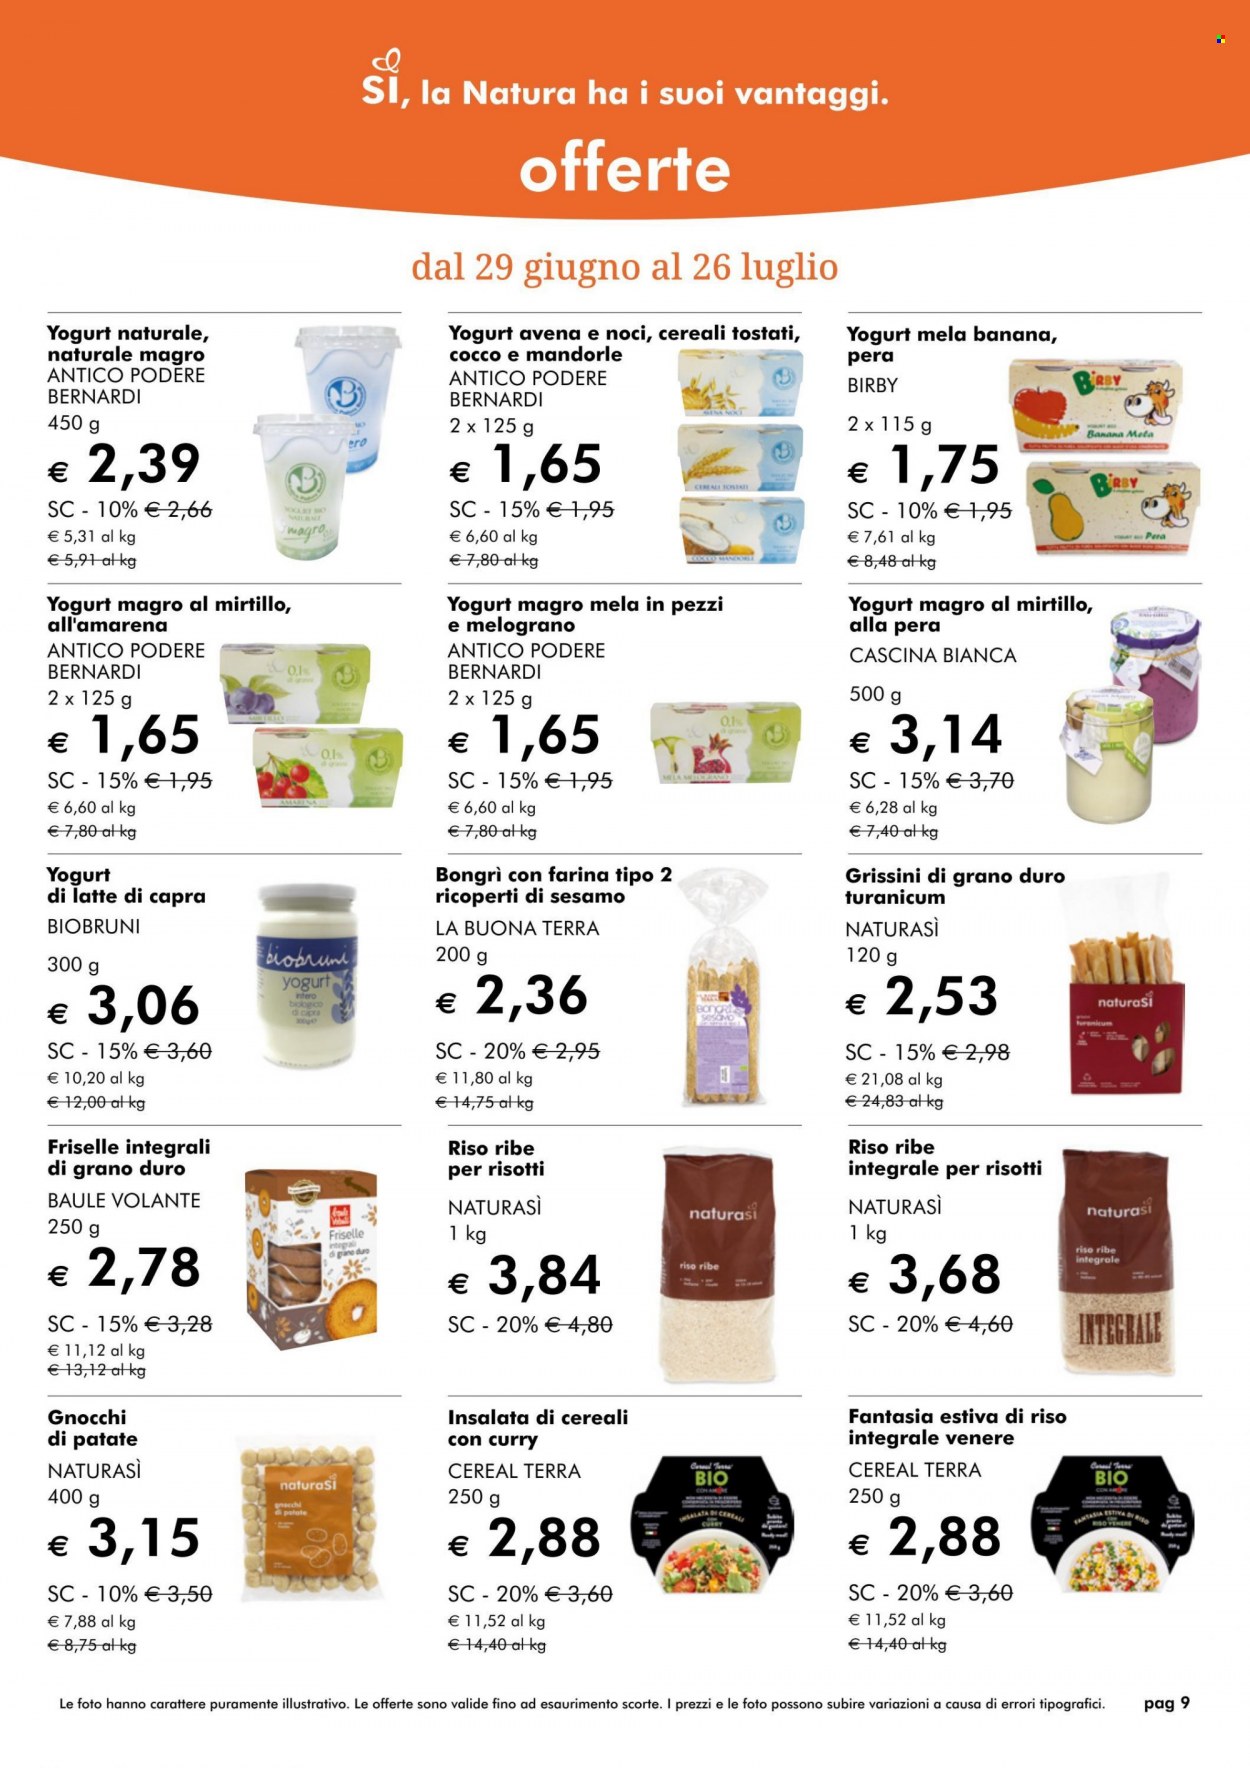 thumbnail - Volantino Natura Sì - 29/6/2022 - 26/7/2022 - Prodotti in offerta - yogurt, gnocchi, grissini, riso integrale, riso ribe. Pagina 9.